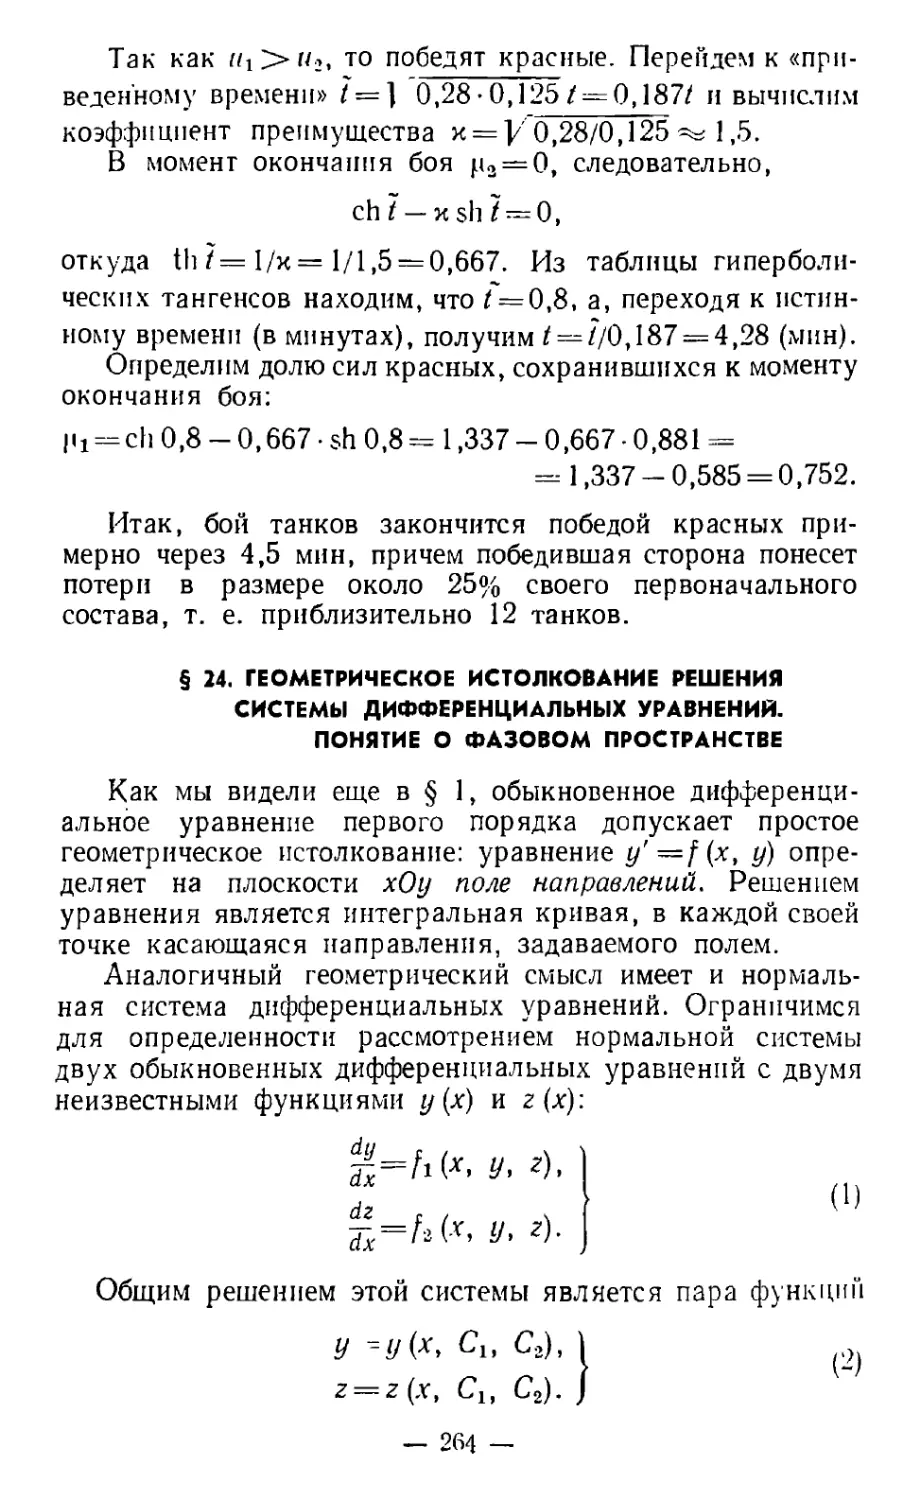 § 24. Геометрическое истолкование решения системы дифференциальных уравнений. Понятие о фазовом пространстве